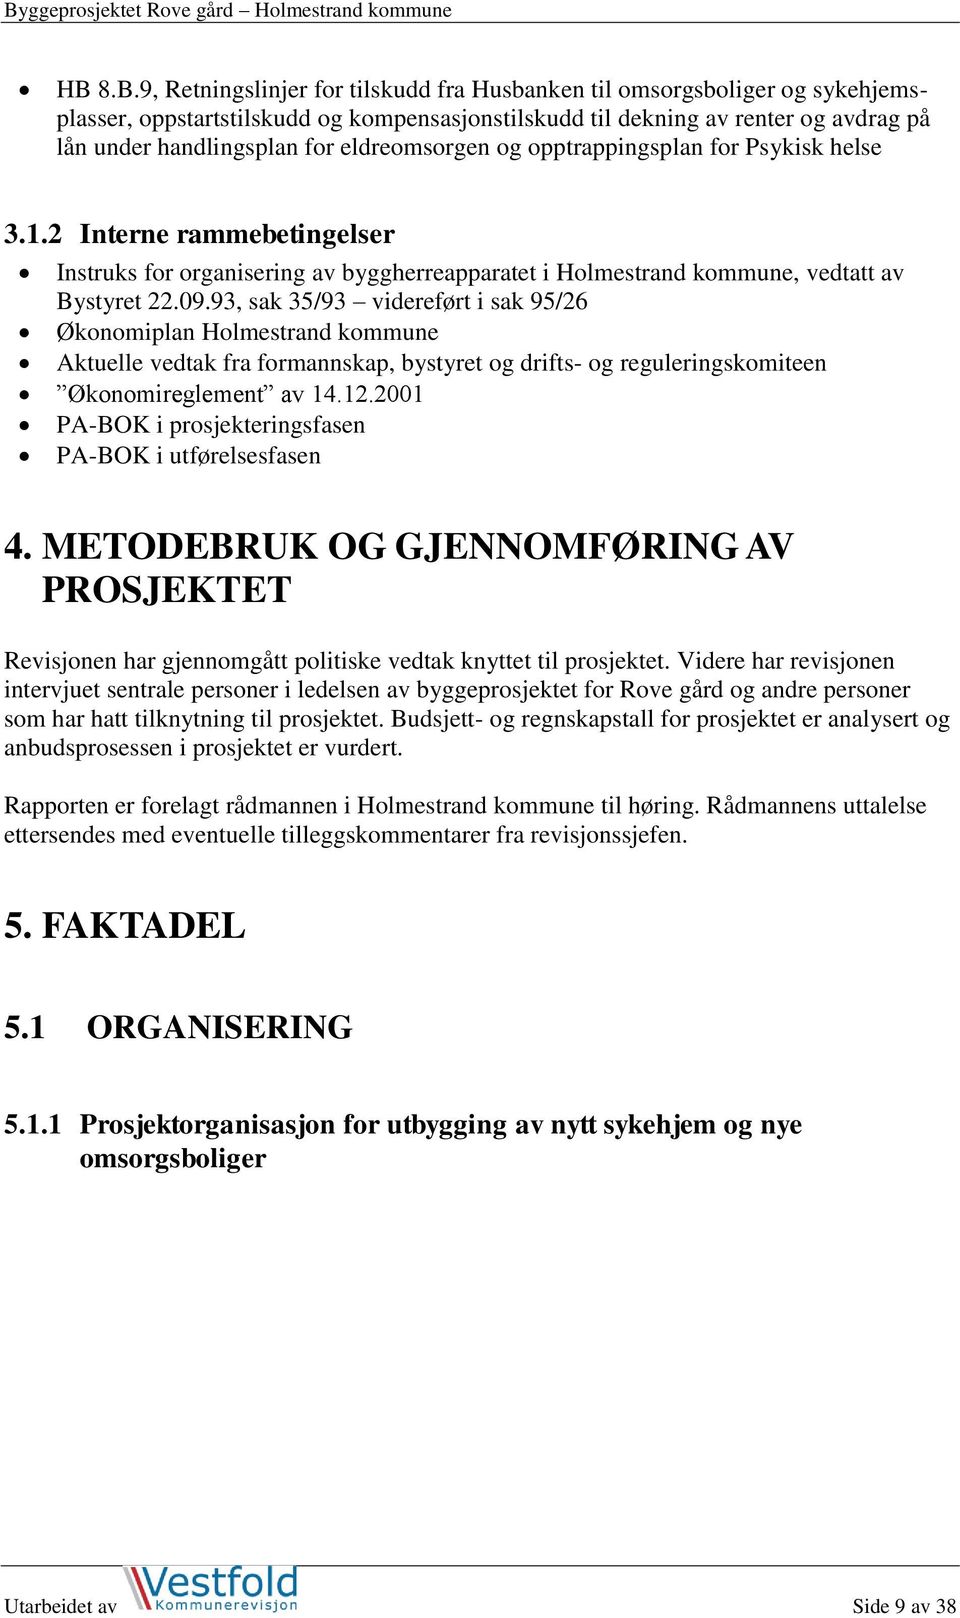 93, sak 35/93 videreført i sak 95/26 Økonomiplan Holmestrand kommune Aktuelle vedtak fra formannskap, bystyret og drifts- og reguleringskomiteen Økonomireglement av 14.12.